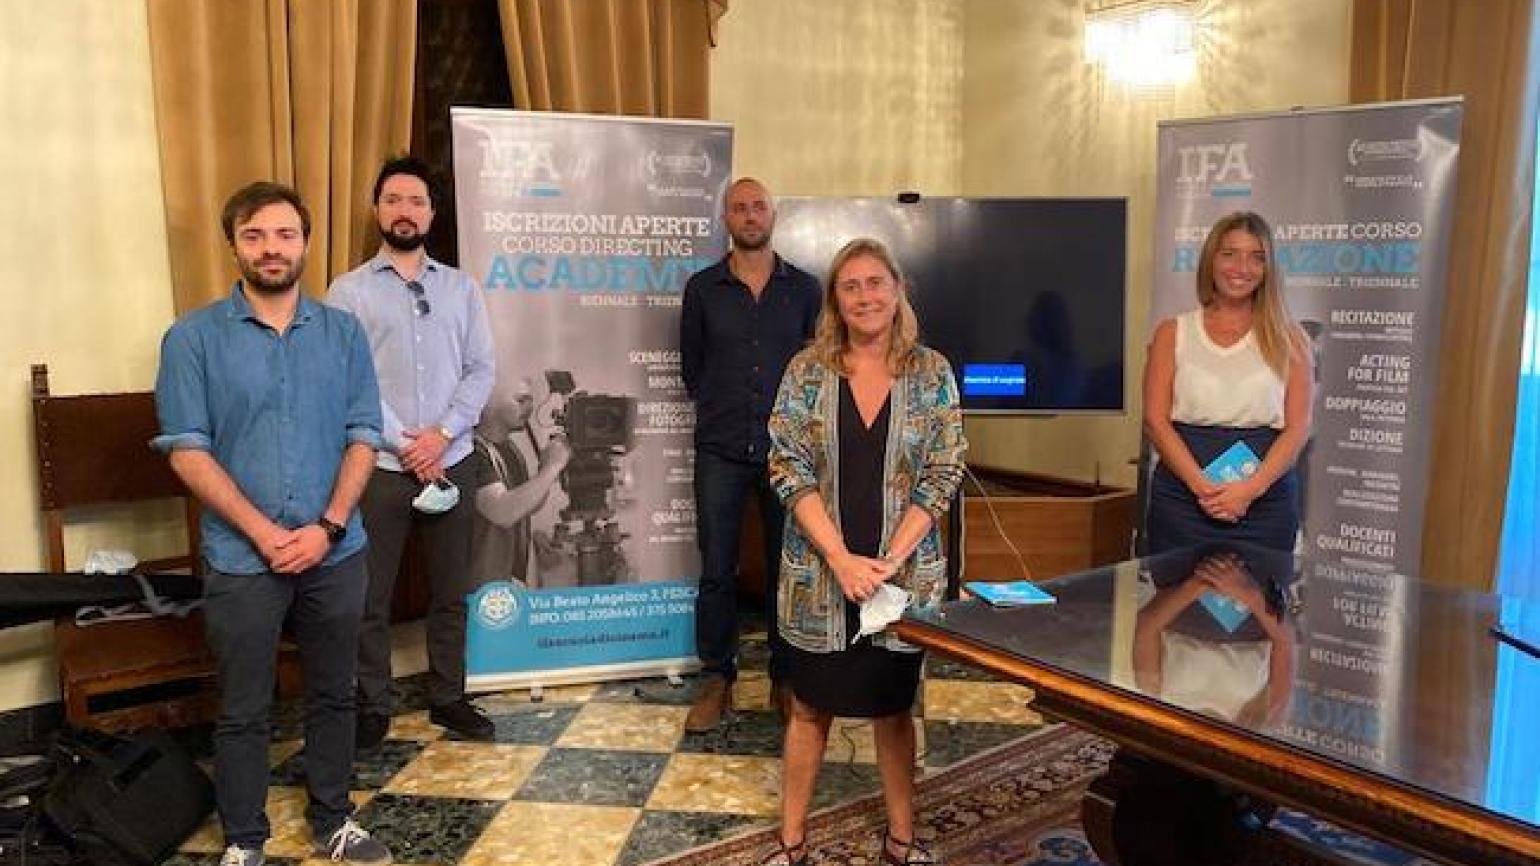 Colpa del mare - IFA Scuola di Cinema presenta a Pescara il suo ultimo lavoro